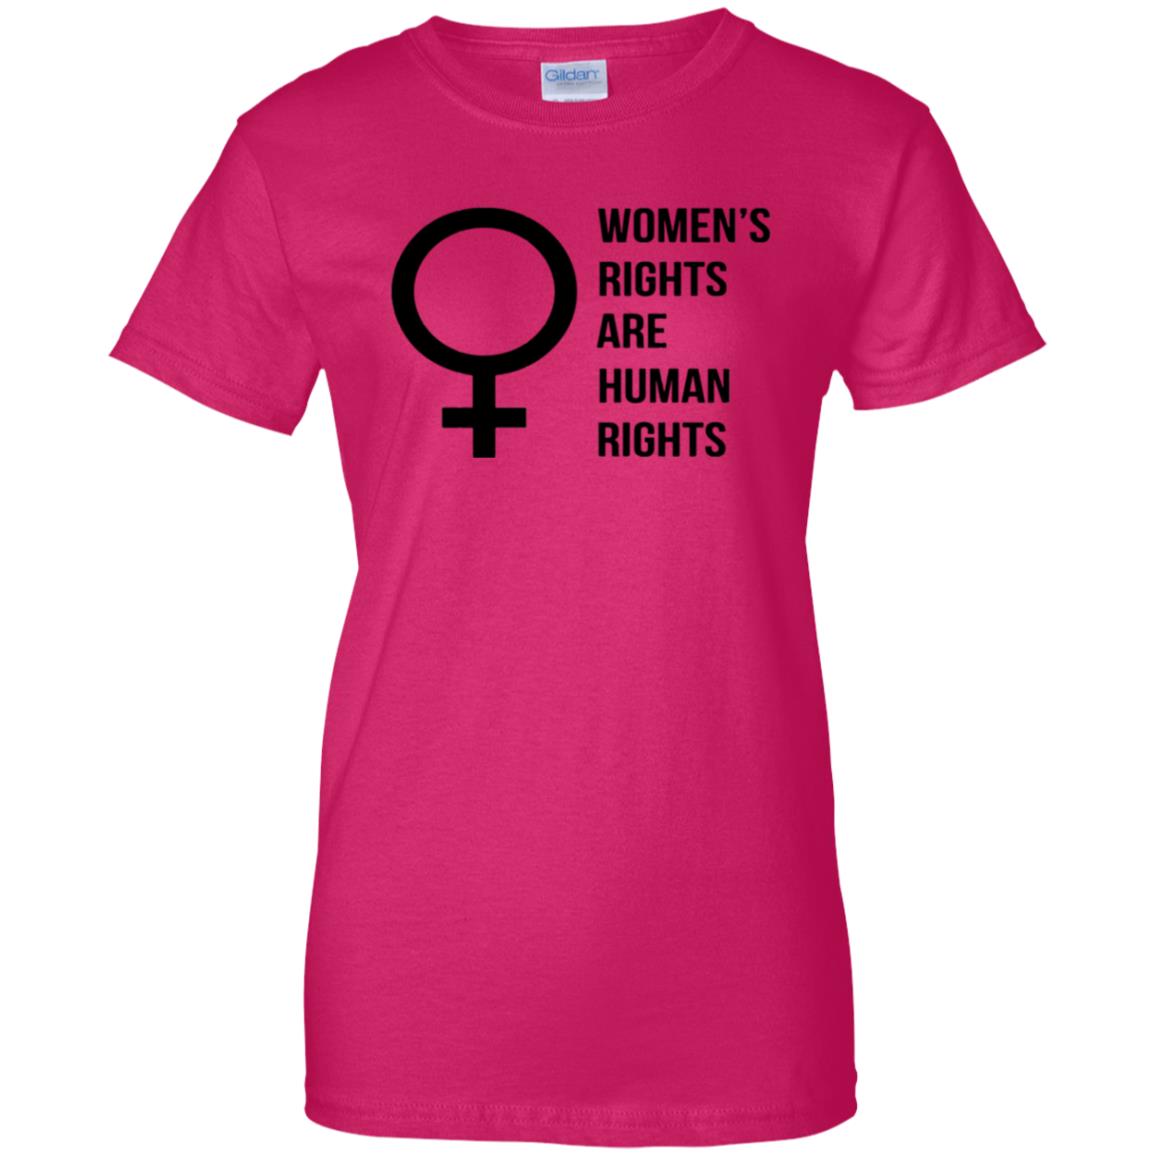 Womens Rights Shirt - 10% Off - FavorMerch